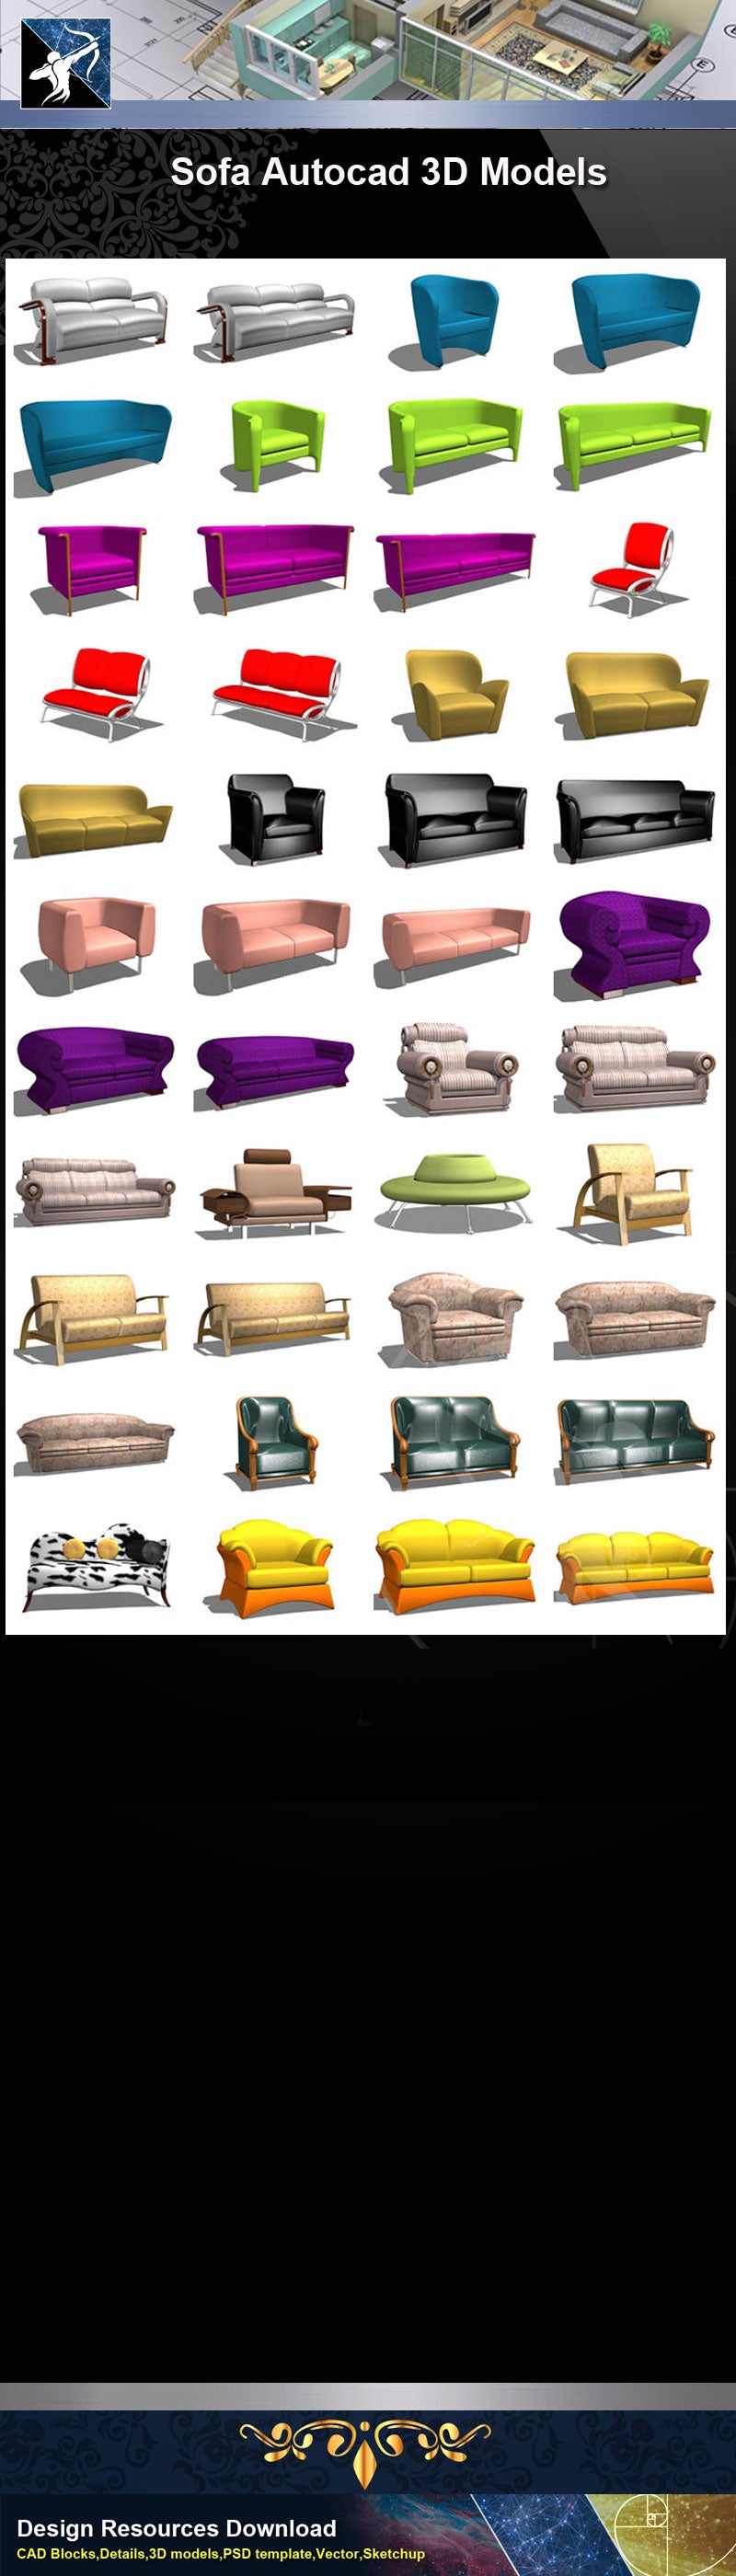 ★AutoCAD 3D Models-Sofa Autocad 3D Models